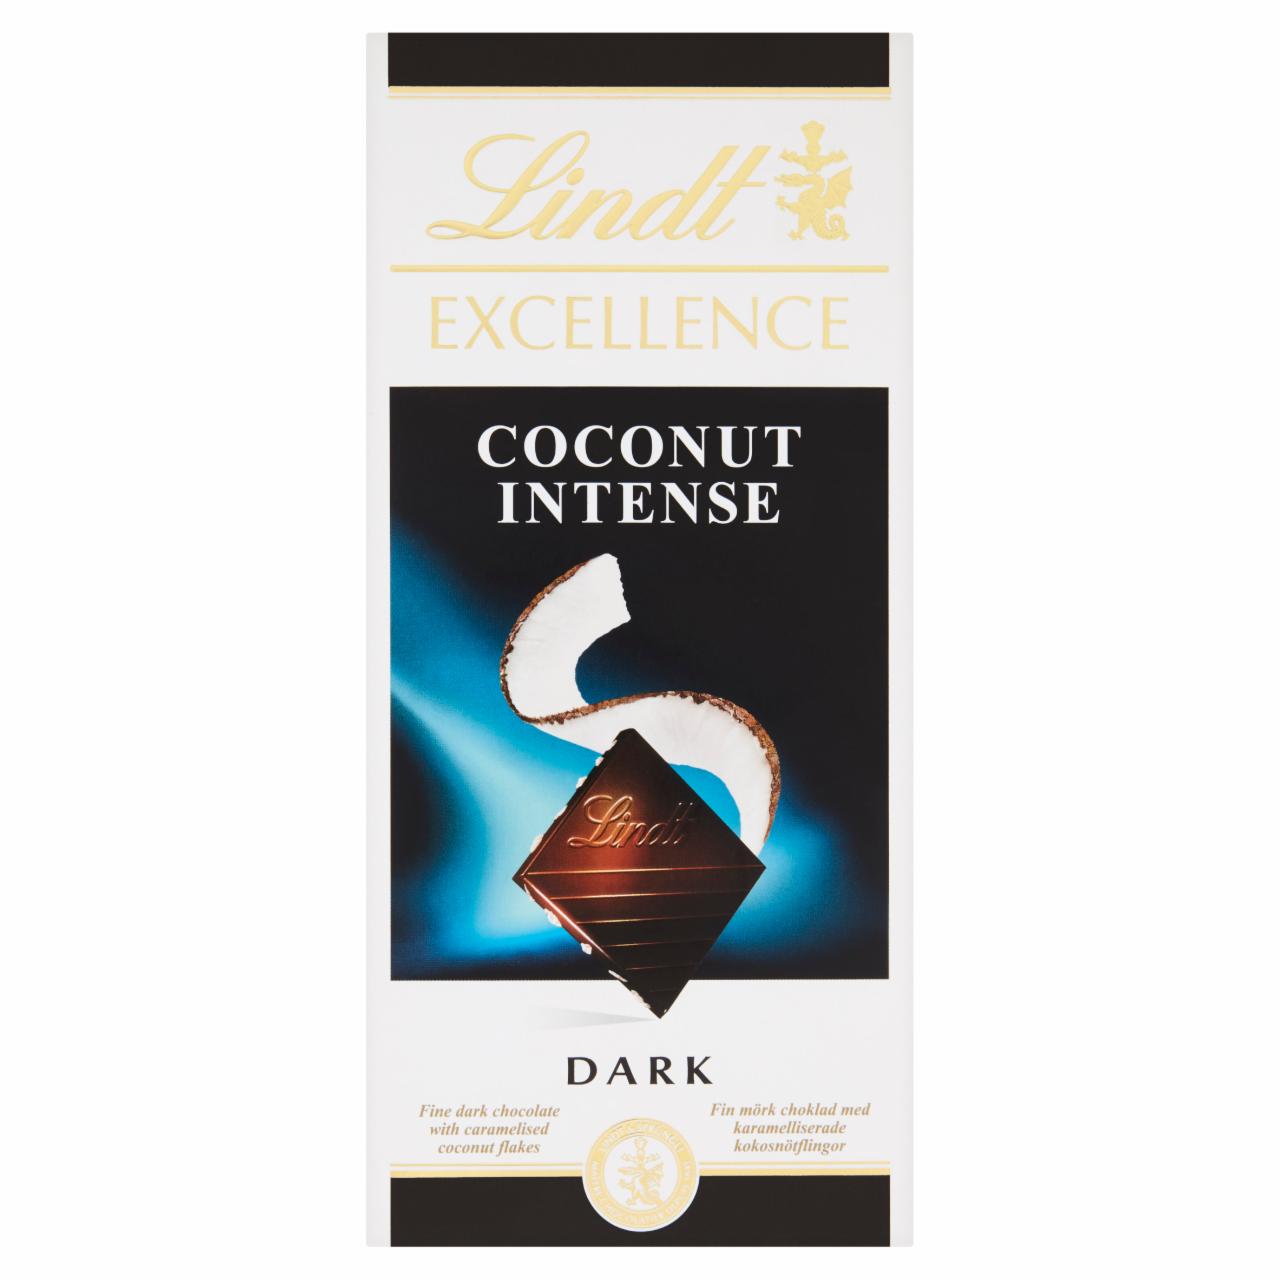 Képek - Lindt Excellence Intense Coconut extra keserű csokoládé karamellizált kókuszdarabokkal 100 g